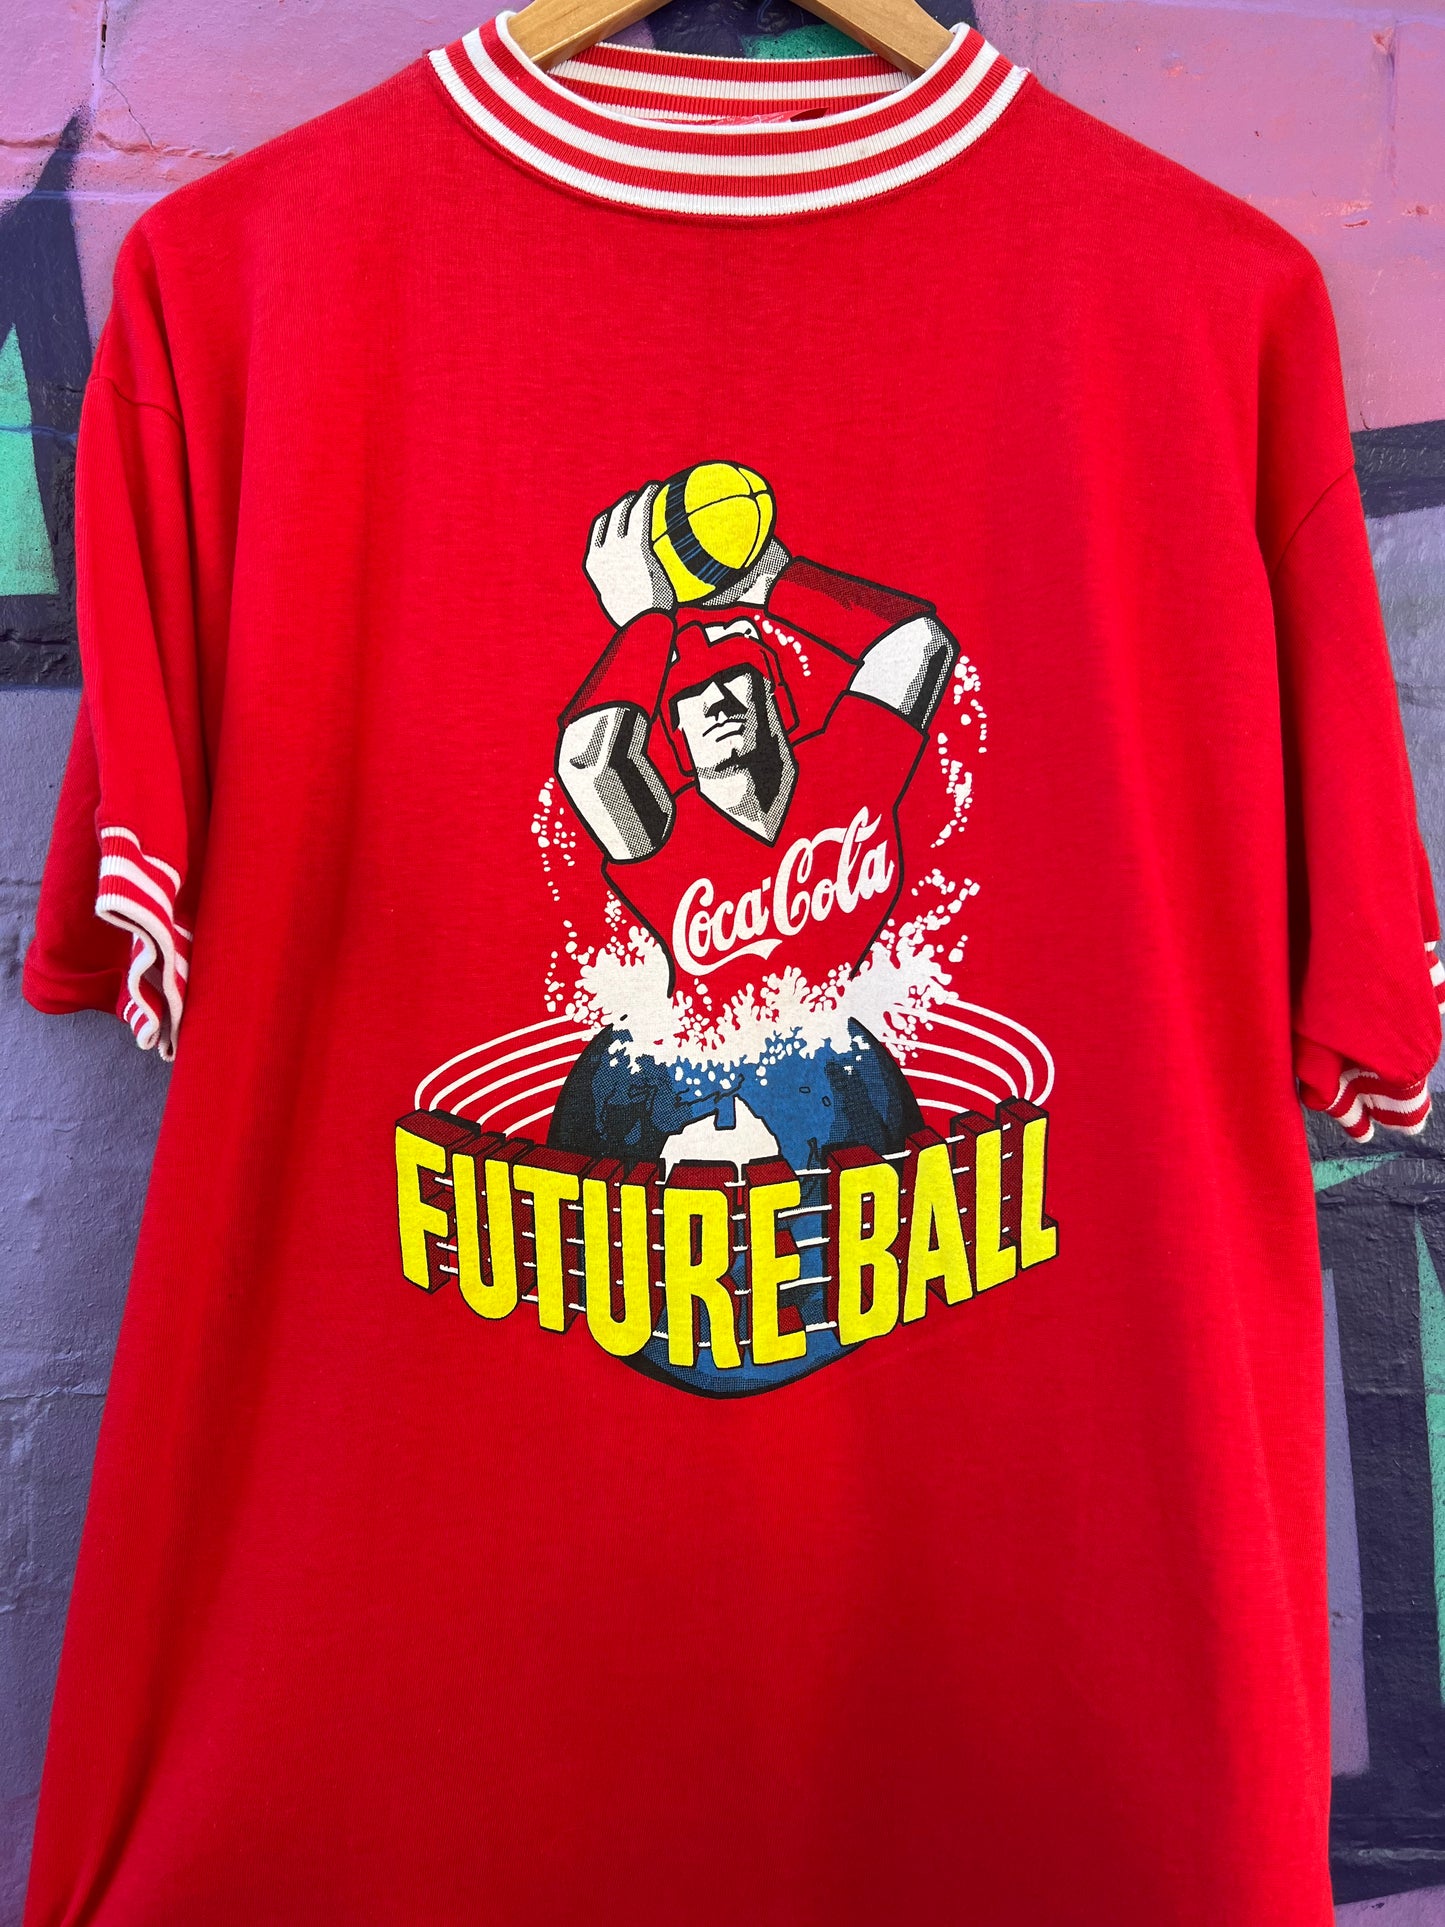 L - 1992 Coca Cola Future Ball Promo